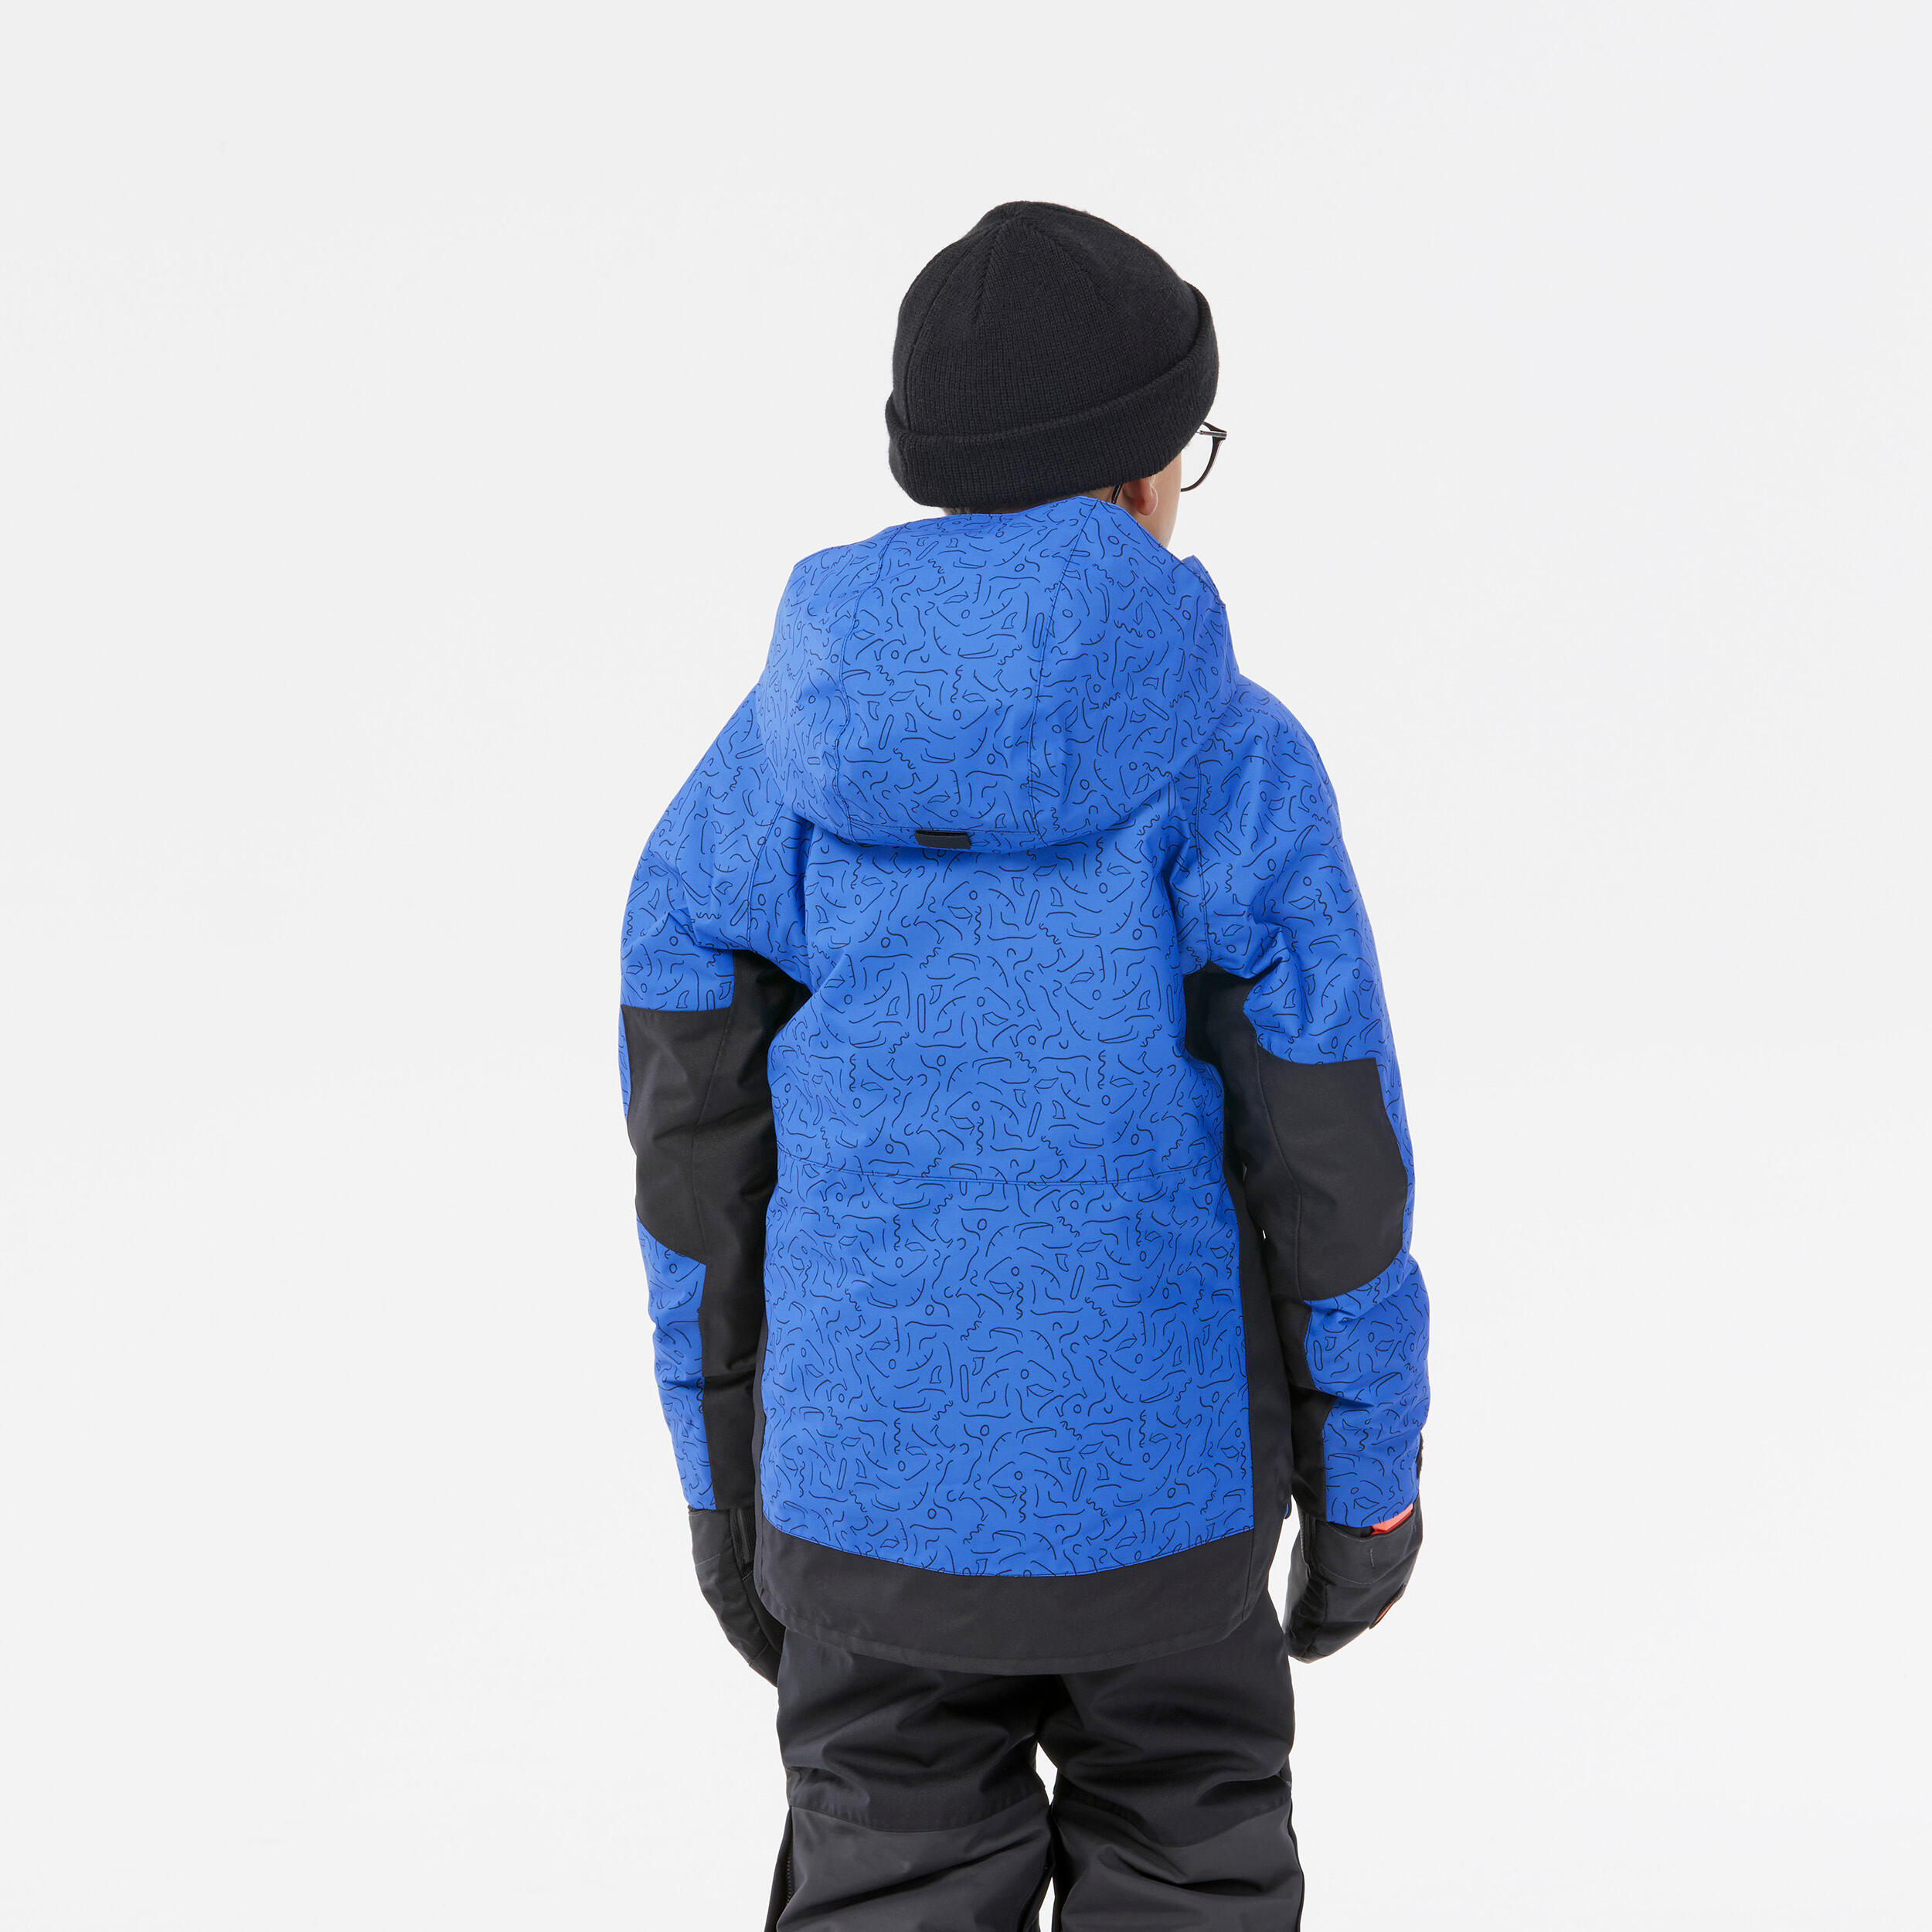 KIDS’ SNOWBOARD ENFANT SNB 500 JACKET – park blue design 5/16